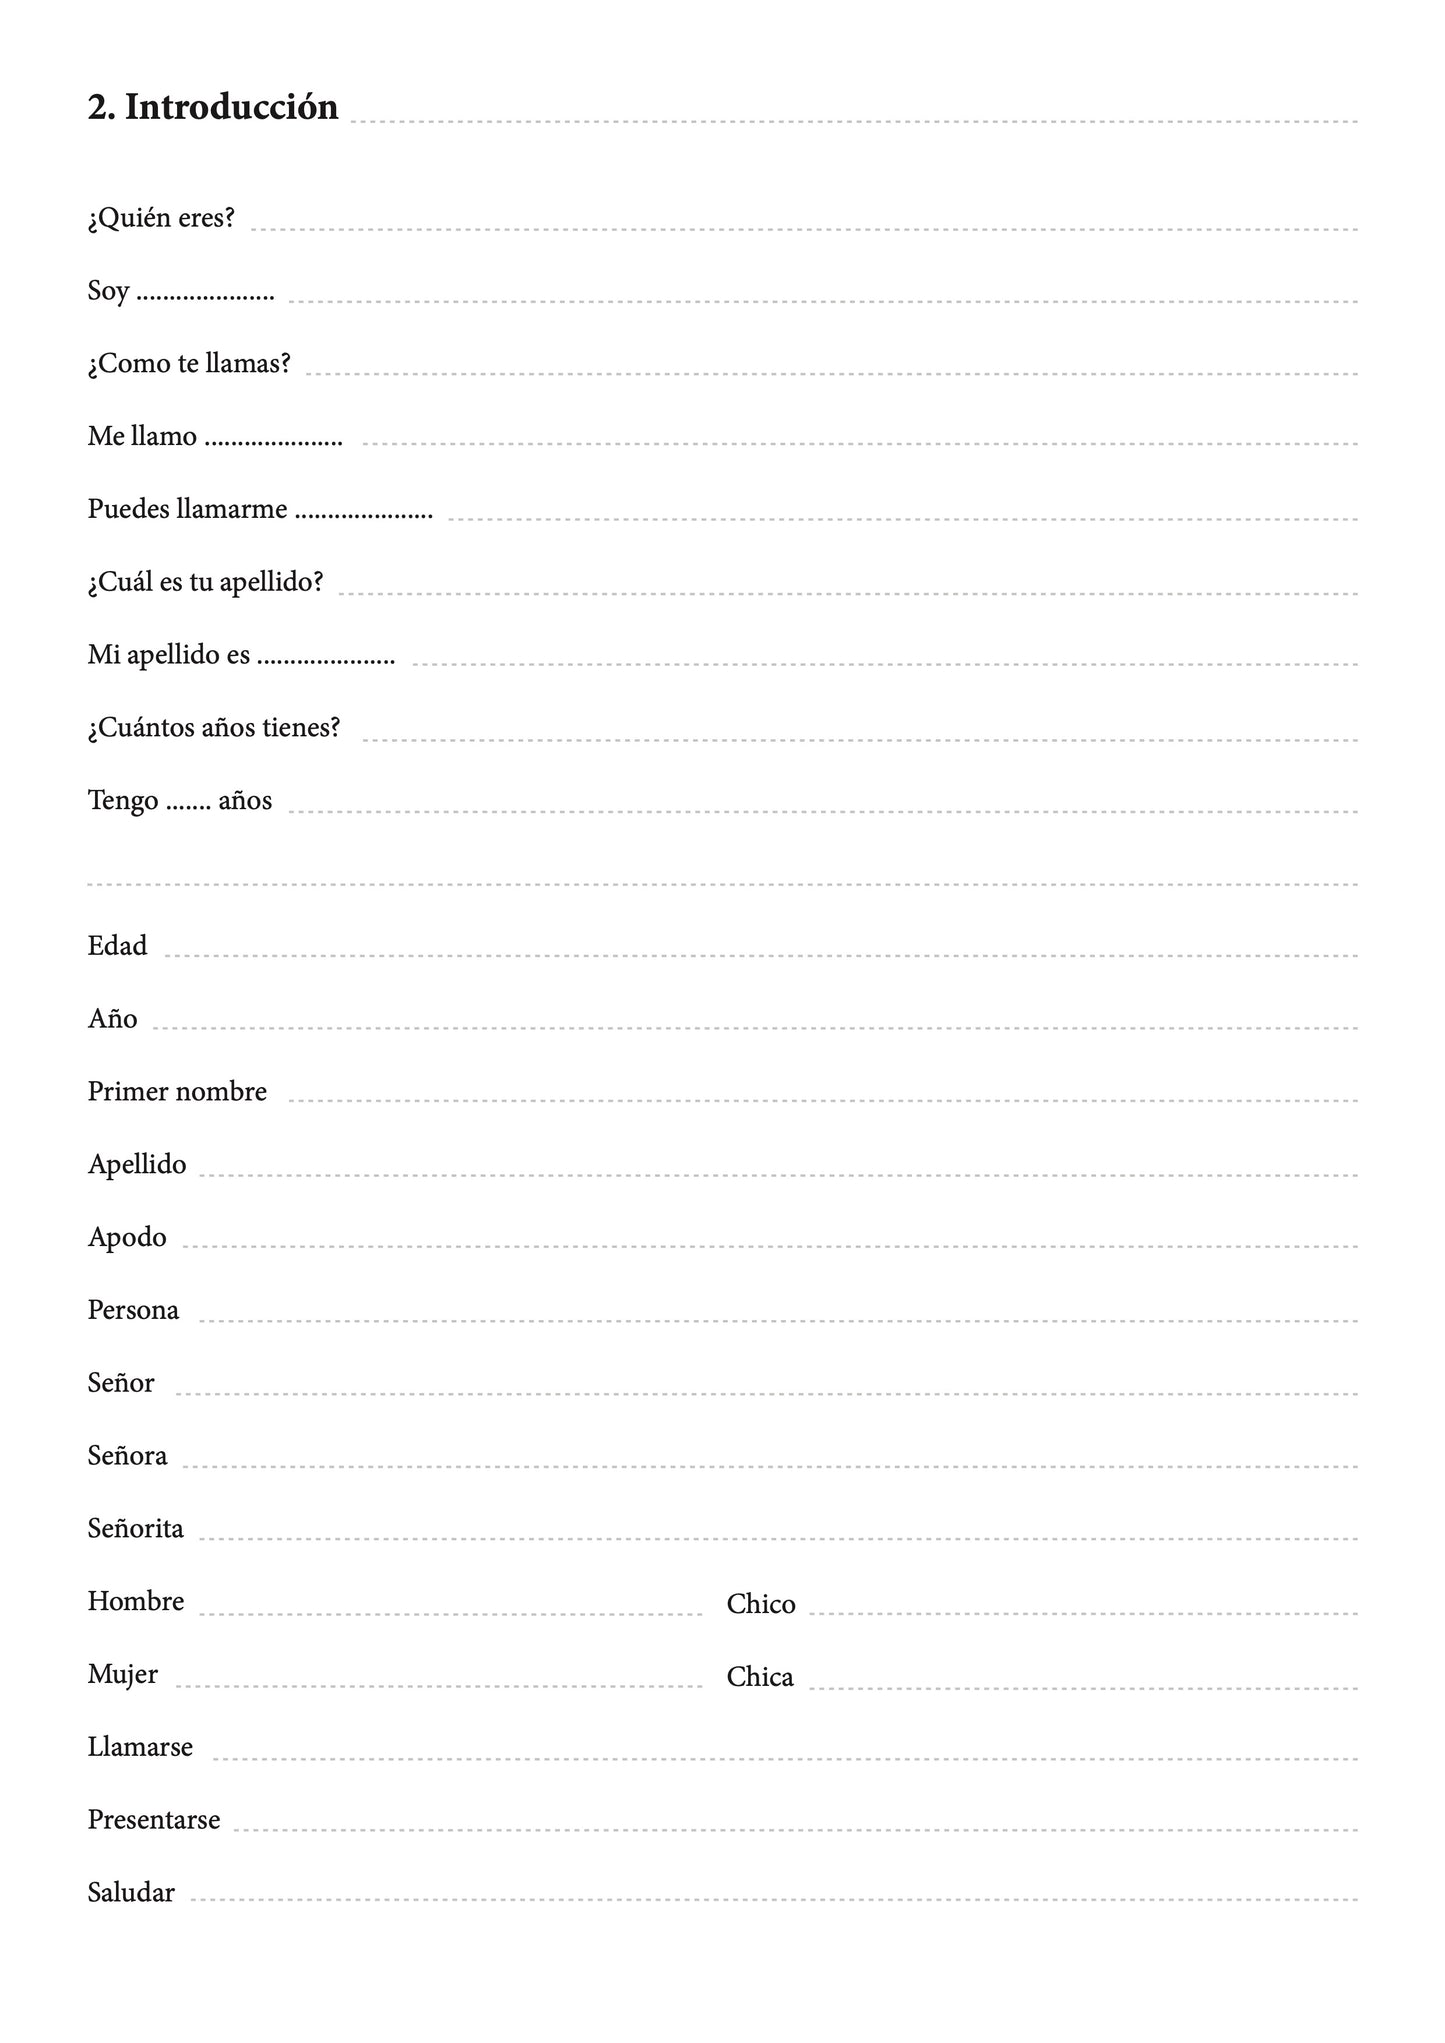 Español-kichwa cuaderno de vocabulario